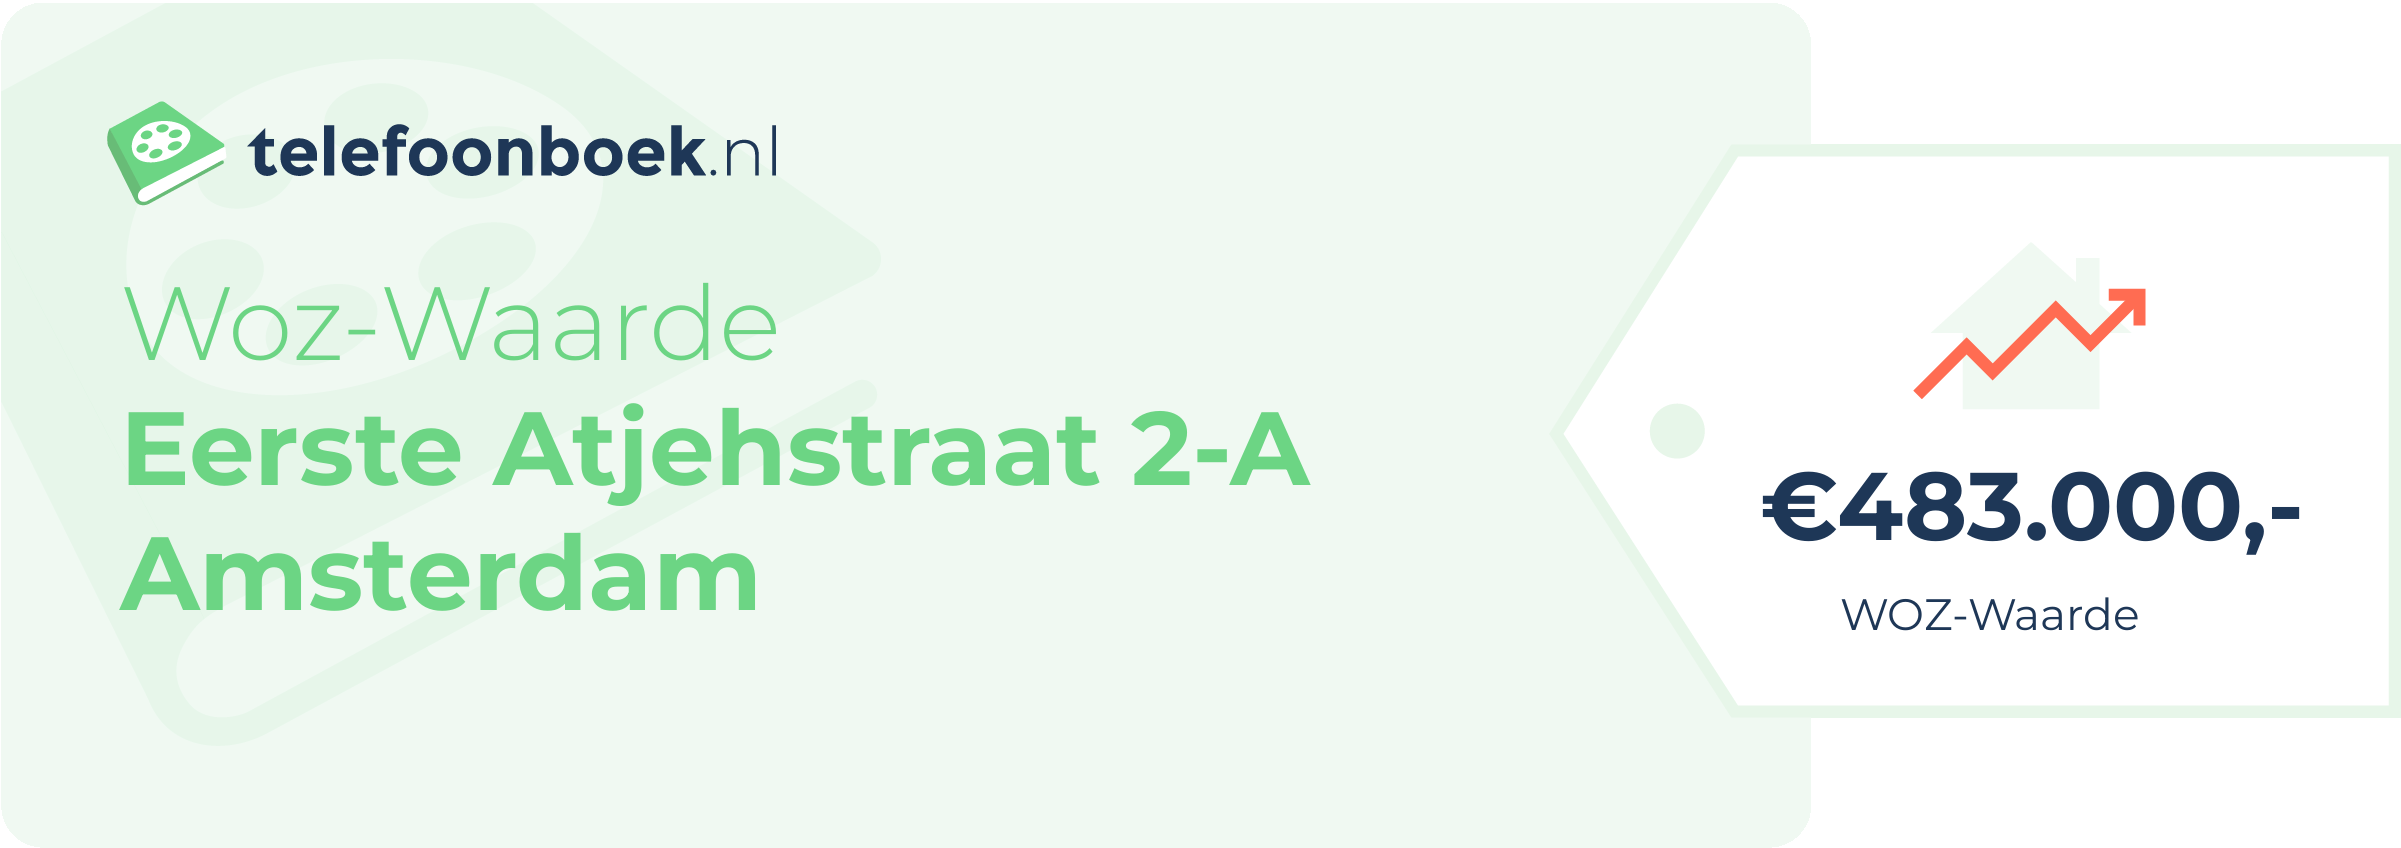 WOZ-waarde Eerste Atjehstraat 2-A Amsterdam